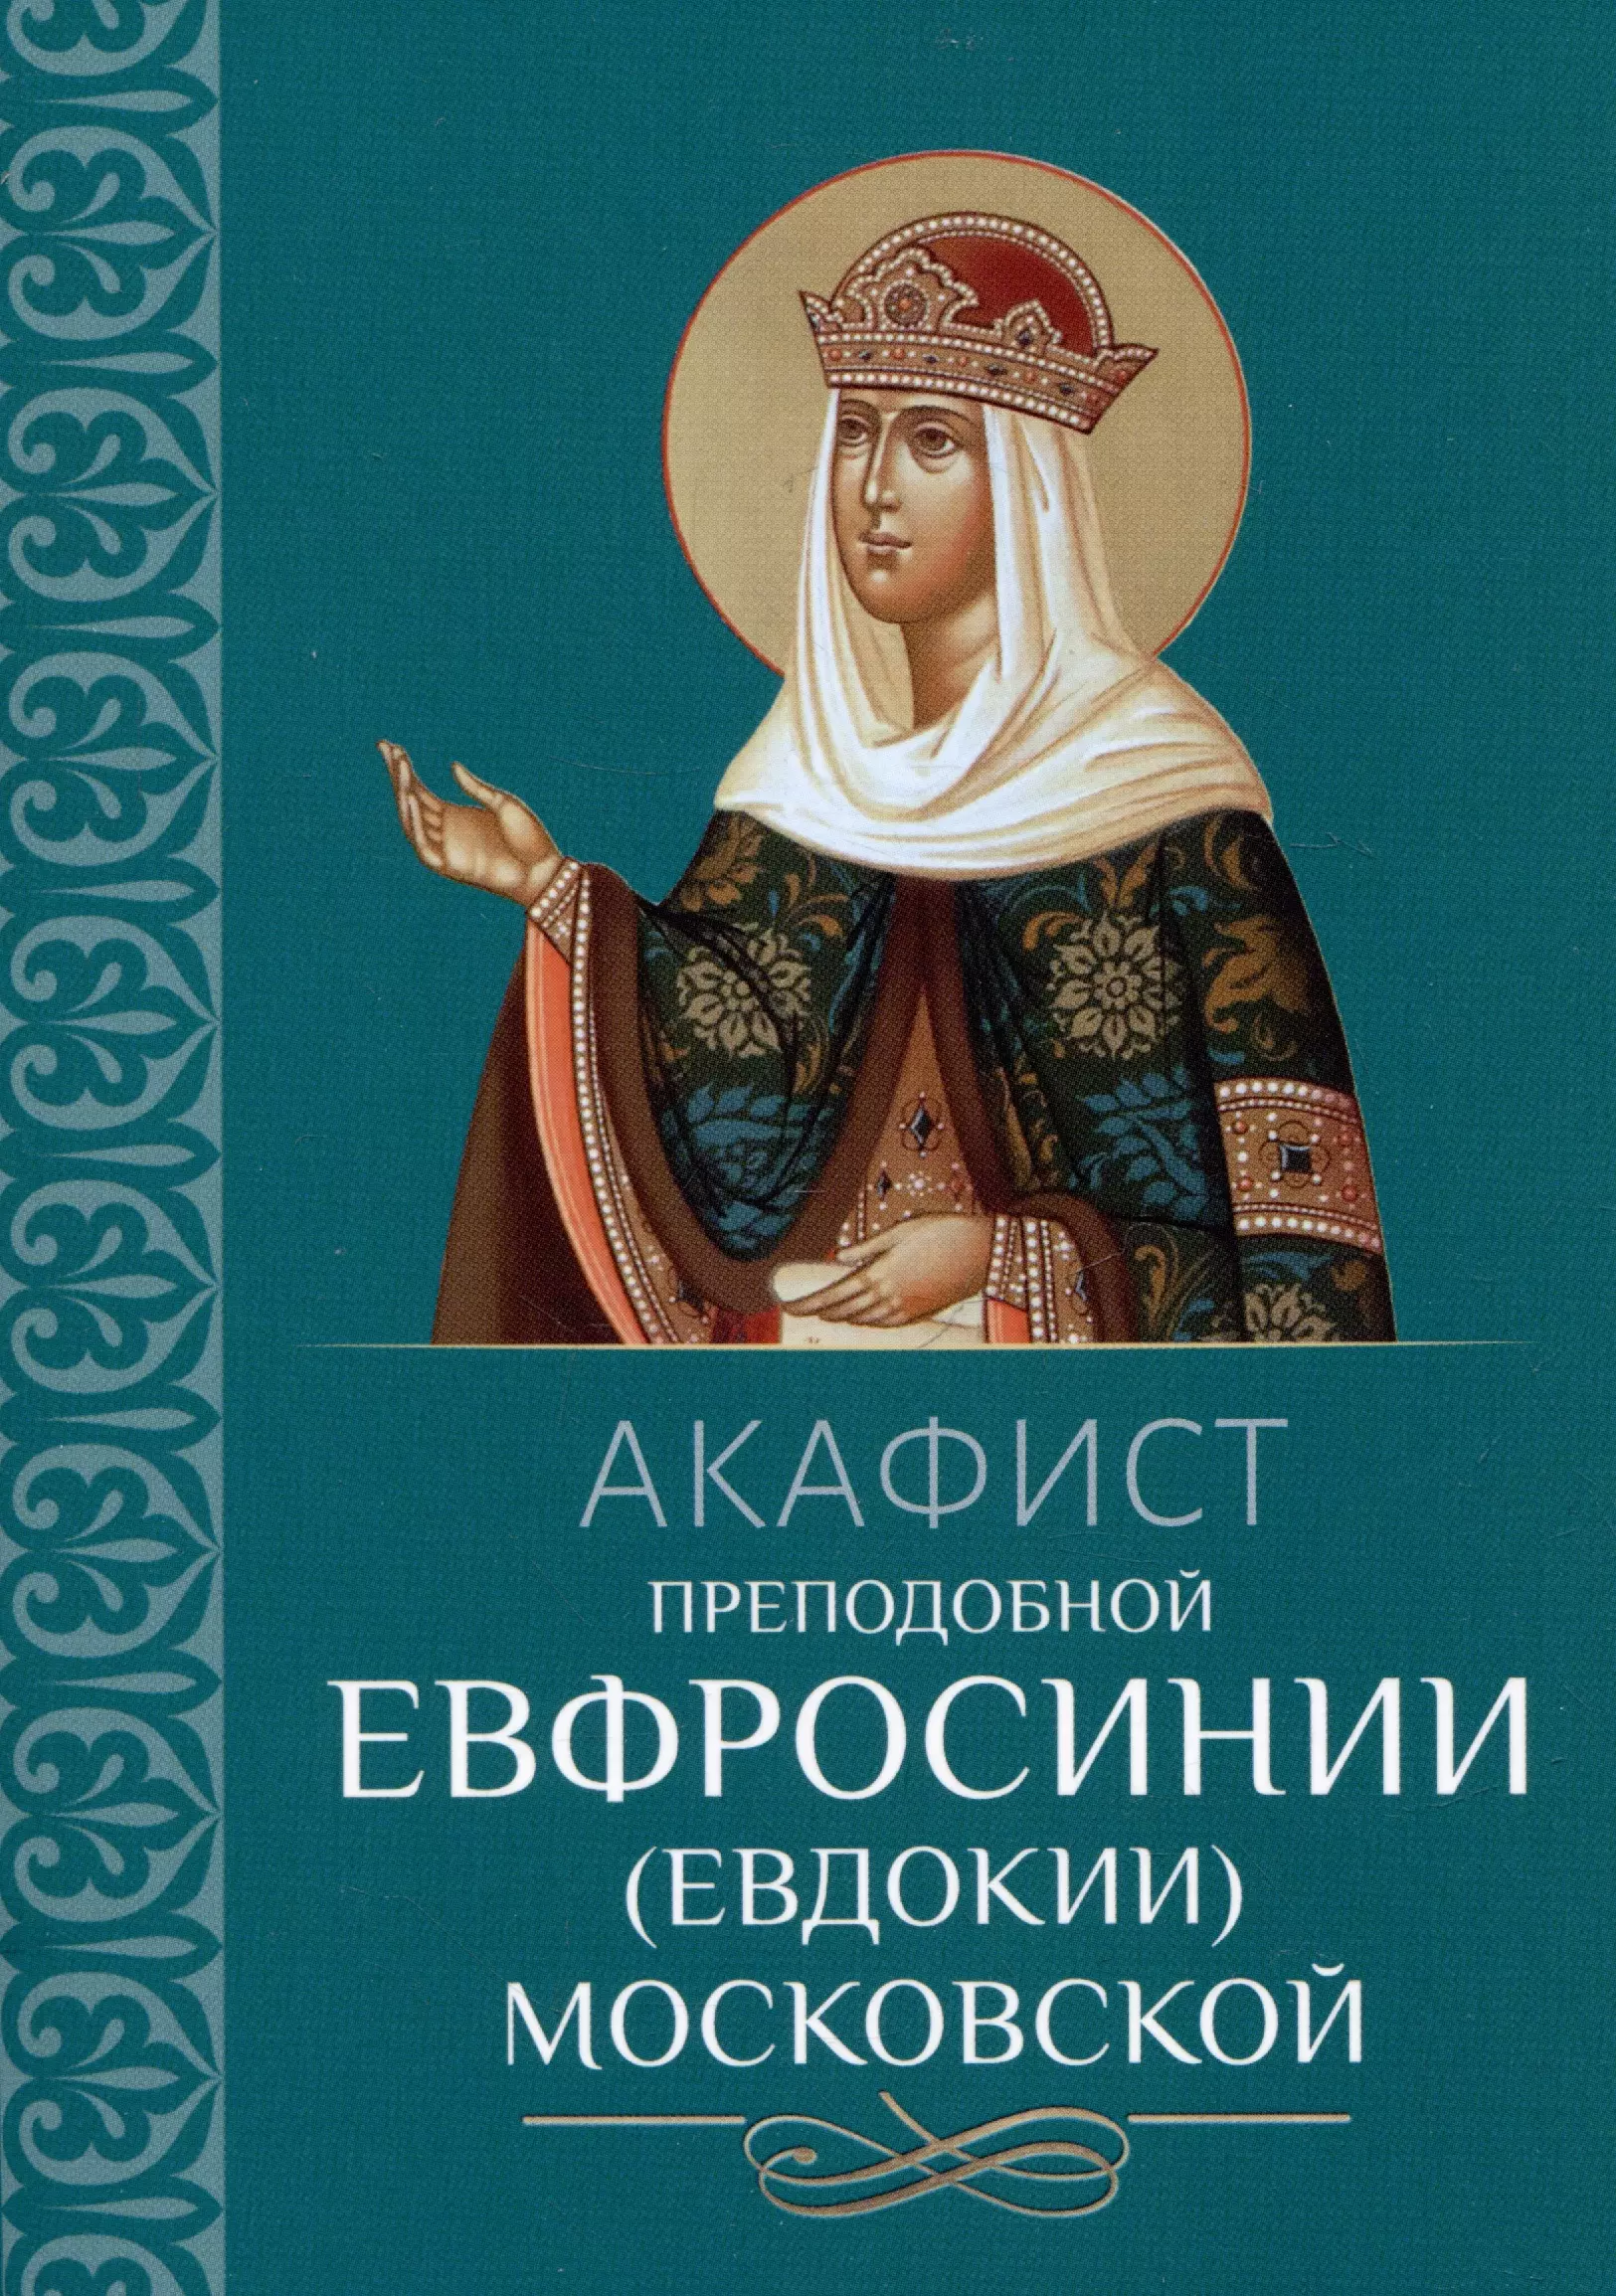 Акафист преподобной Евфросинии (Евдокии) Московской песнопения святой и великой пасхи